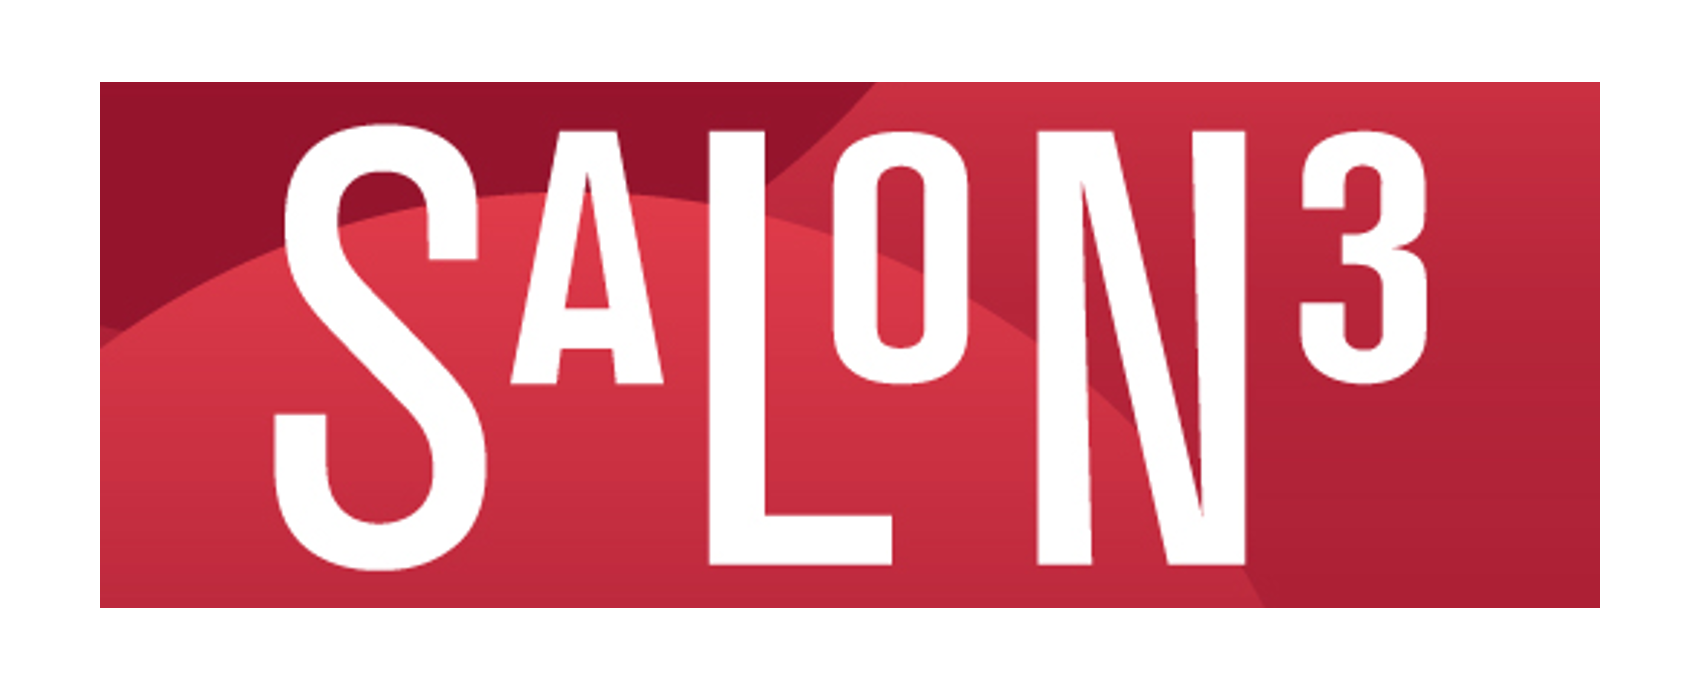 Salon3 Logo